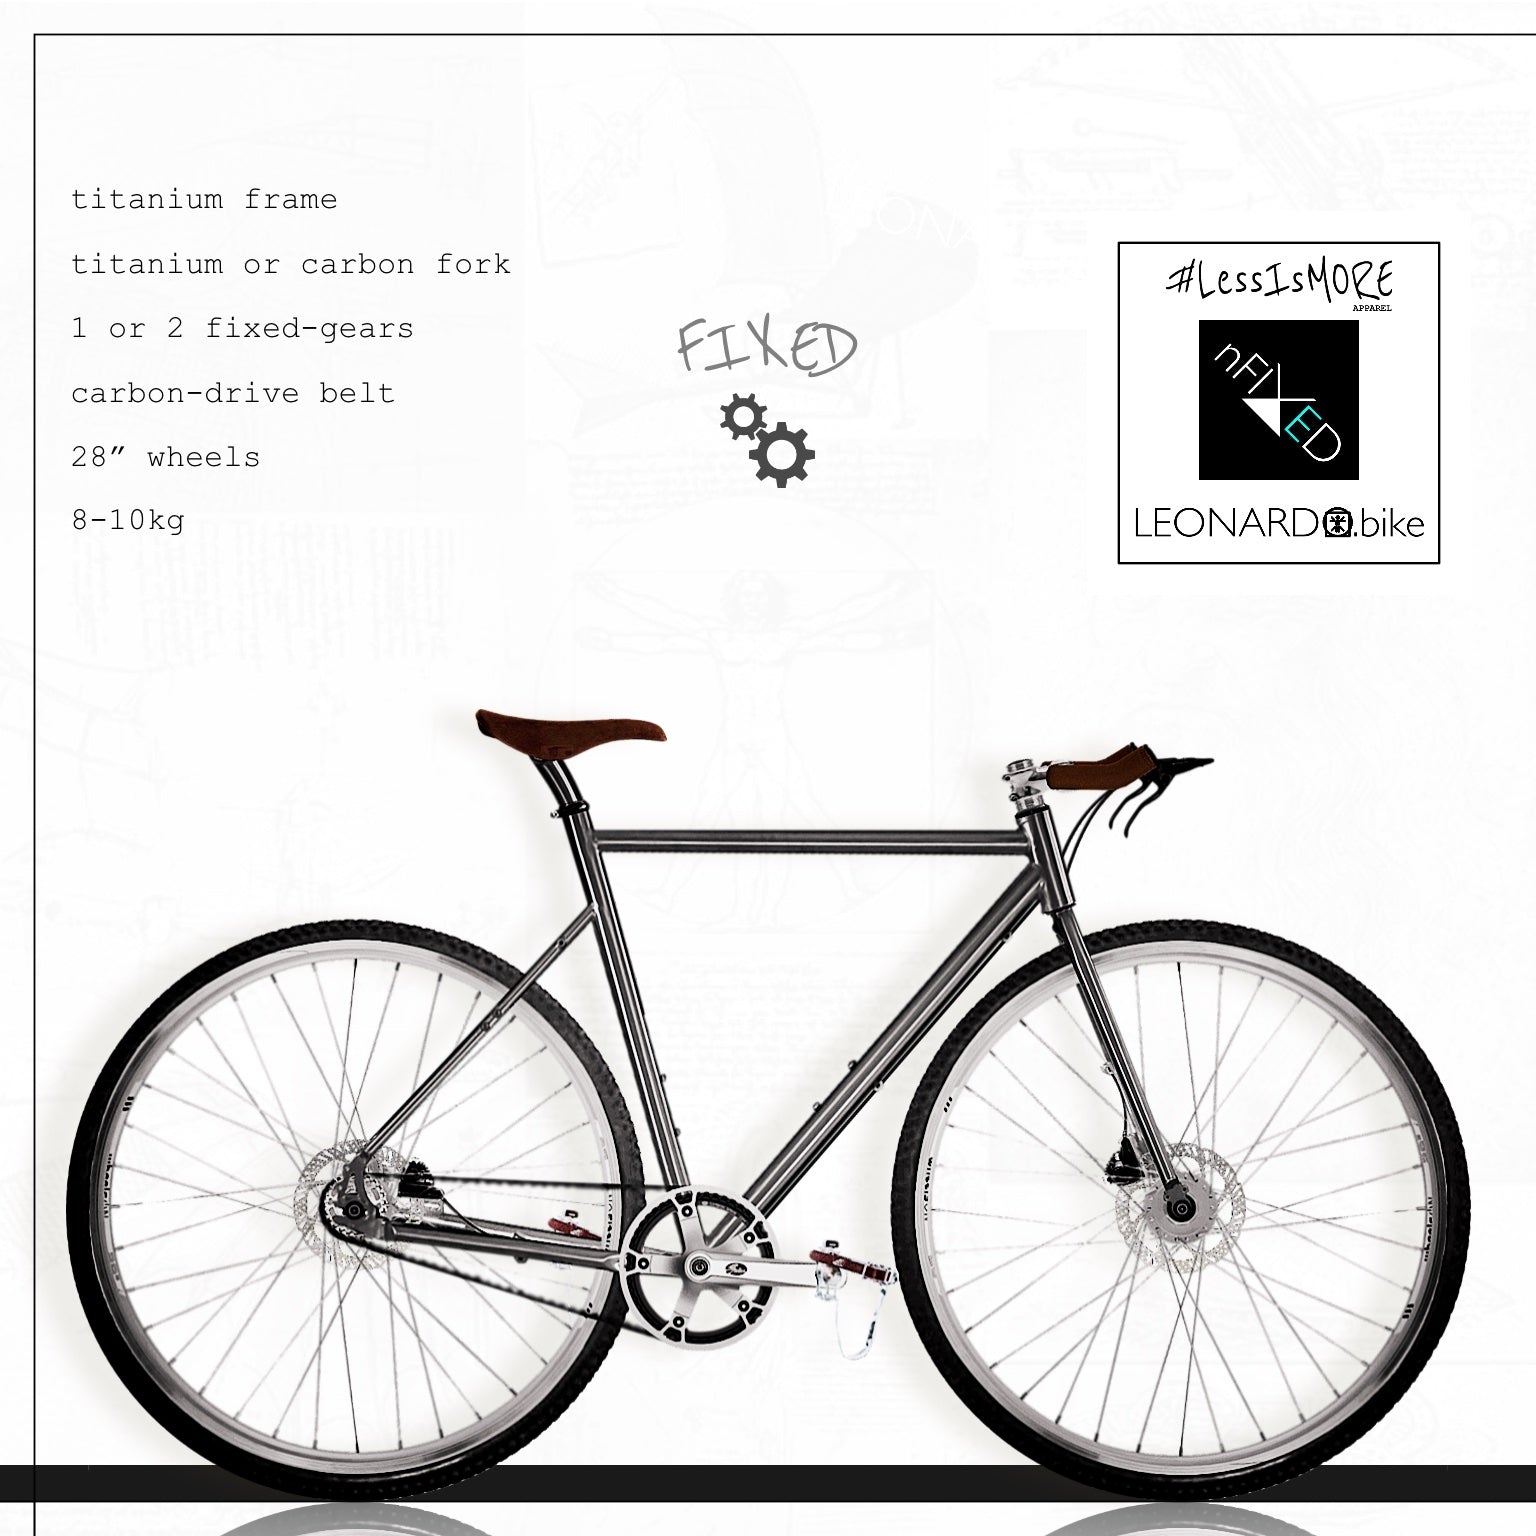 "FIXED LEONARDO" titanium 1/2-fixed-gears bike